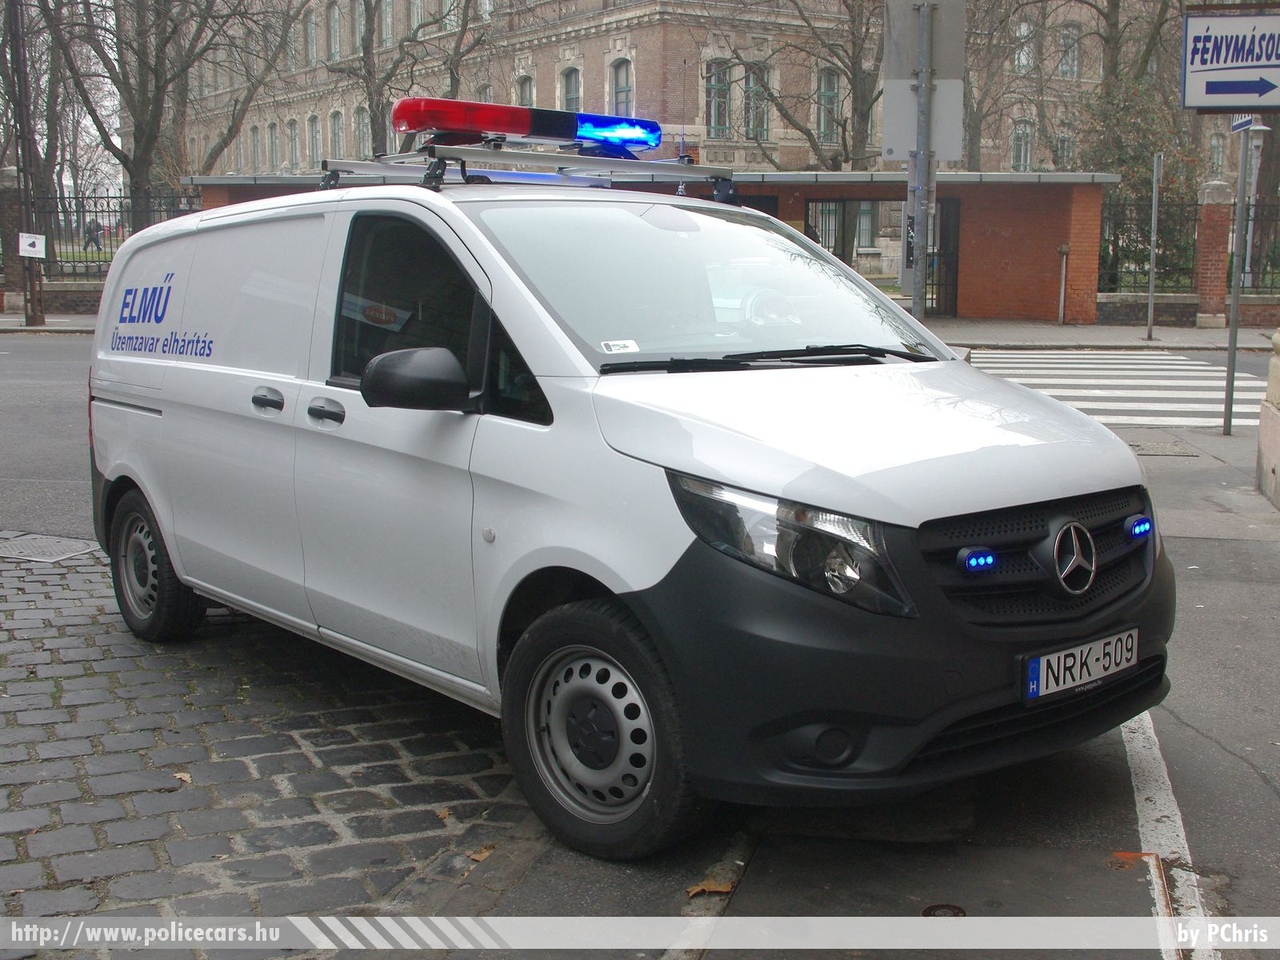 Mercedes-Benz Vito 114 Bluetec 4x4, fotó: PChris
Keywords: ELMÛ elektromos mûvek NRK-509